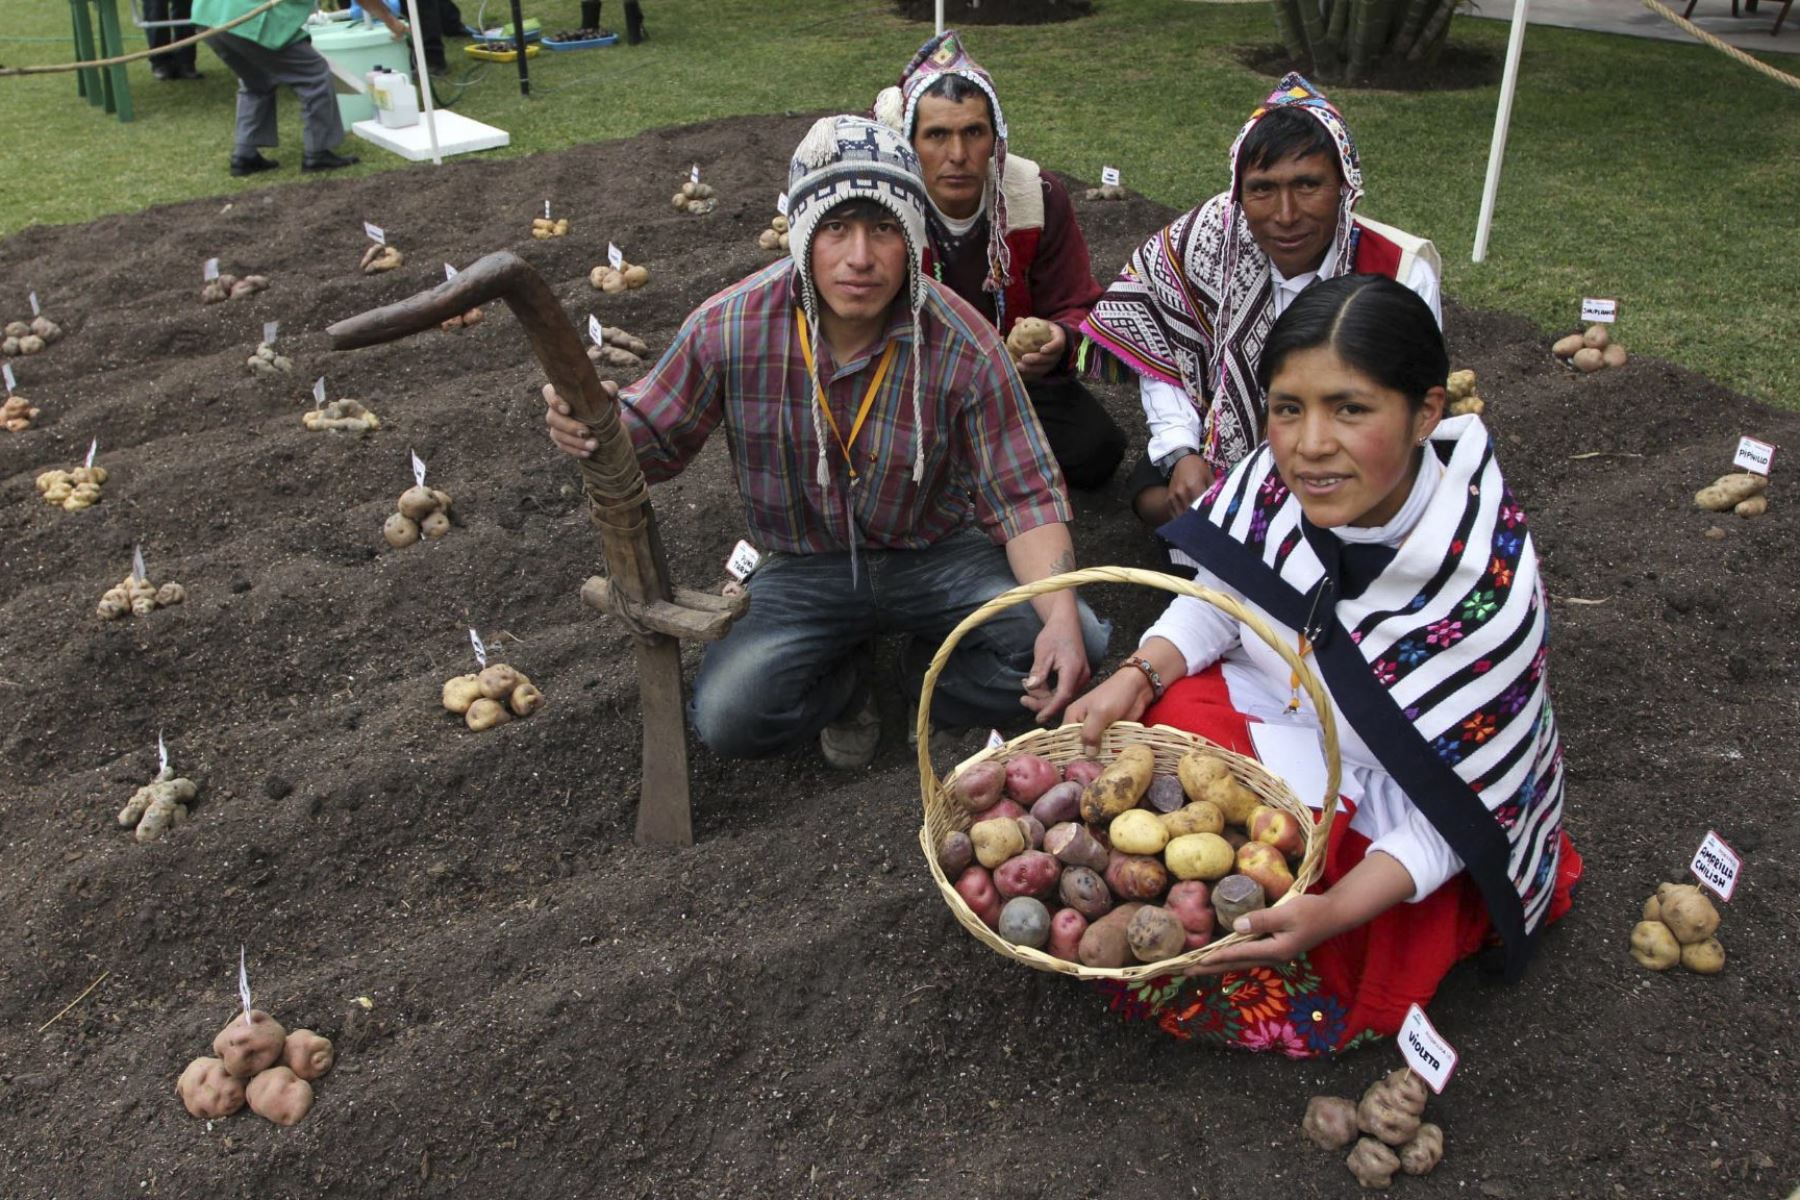 El Perú es un país megadiverso y centro de origen para cultivos y crianzas de importancia global. Asimismo, es reconocido como uno de los centros de domesticación más prolíficos en la historia de la humanidad, habiéndose domesticado cultivos como la papa, la quinua, el algodón, entre otros. ANDINA/Difusión